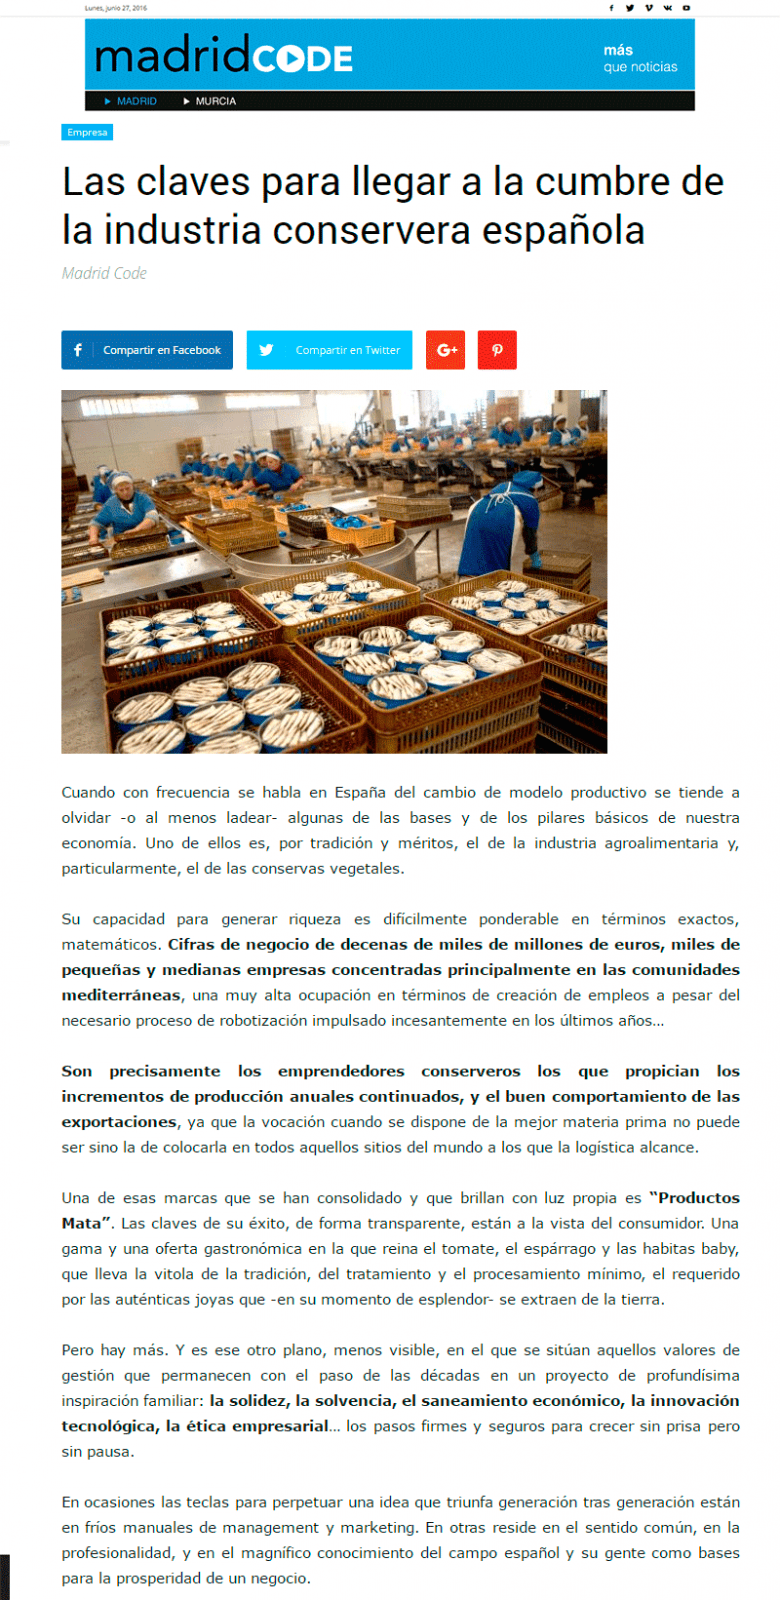 Las claves para llegar a la cumbre de la industria conservera española. @MadridCode